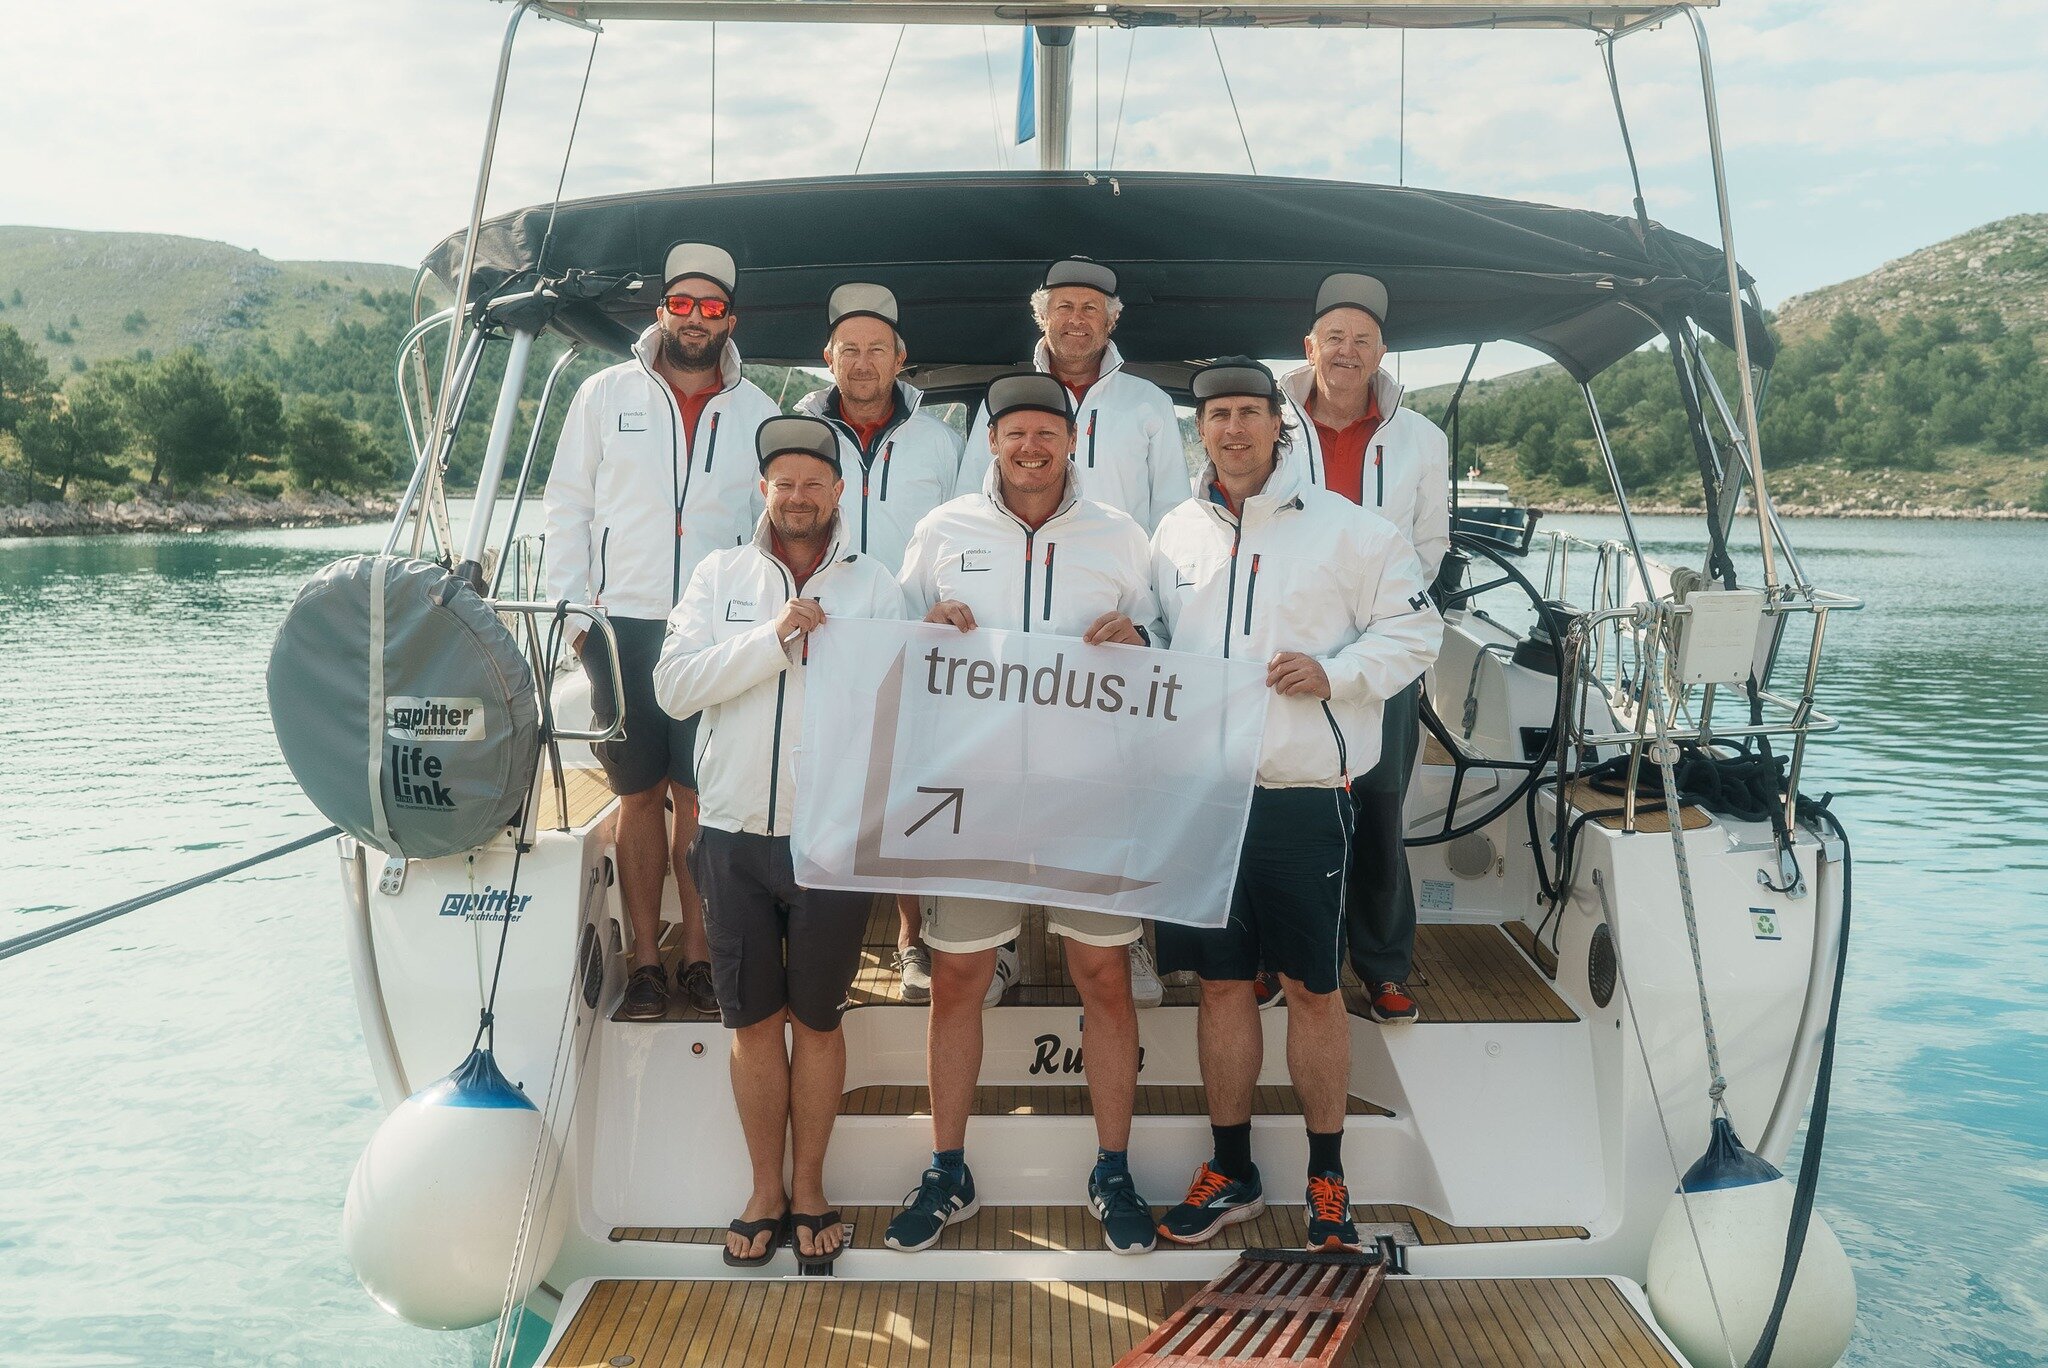 Mannschaft auf dem Boot mit Trendus-Banner